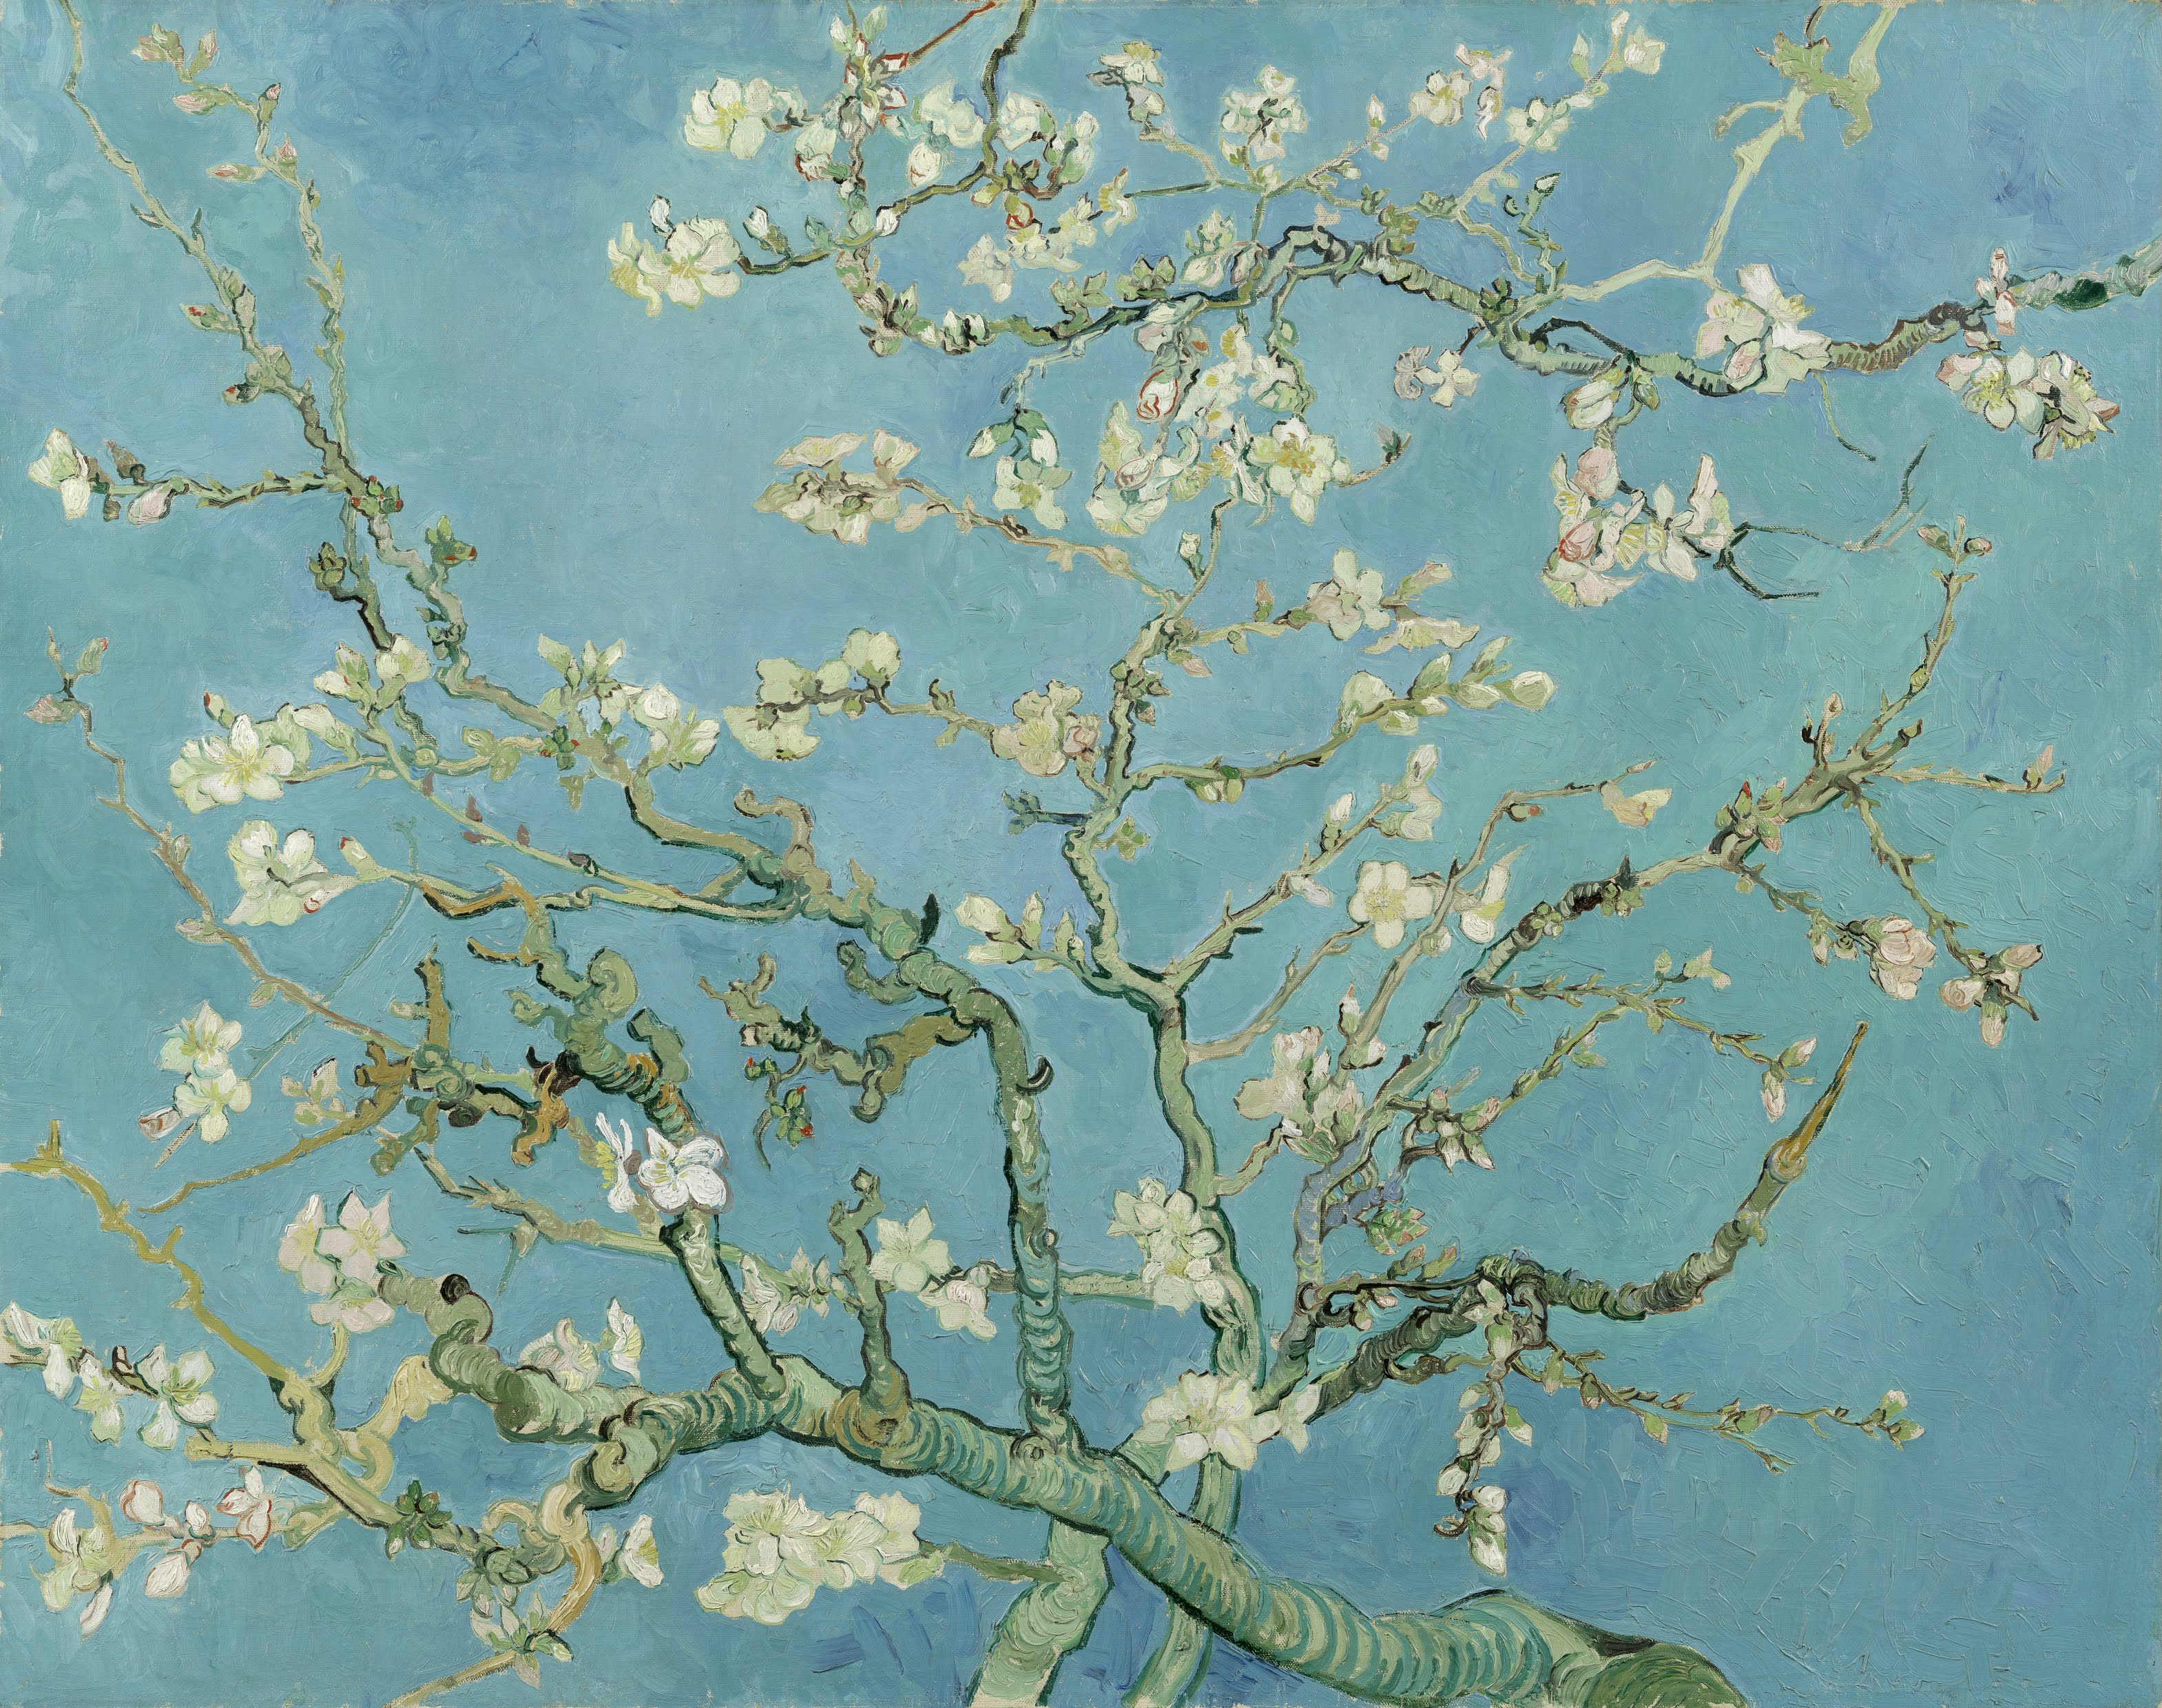  Flori de migdal by Vincent van Gogh - 1890 - 74 x 92 cm 